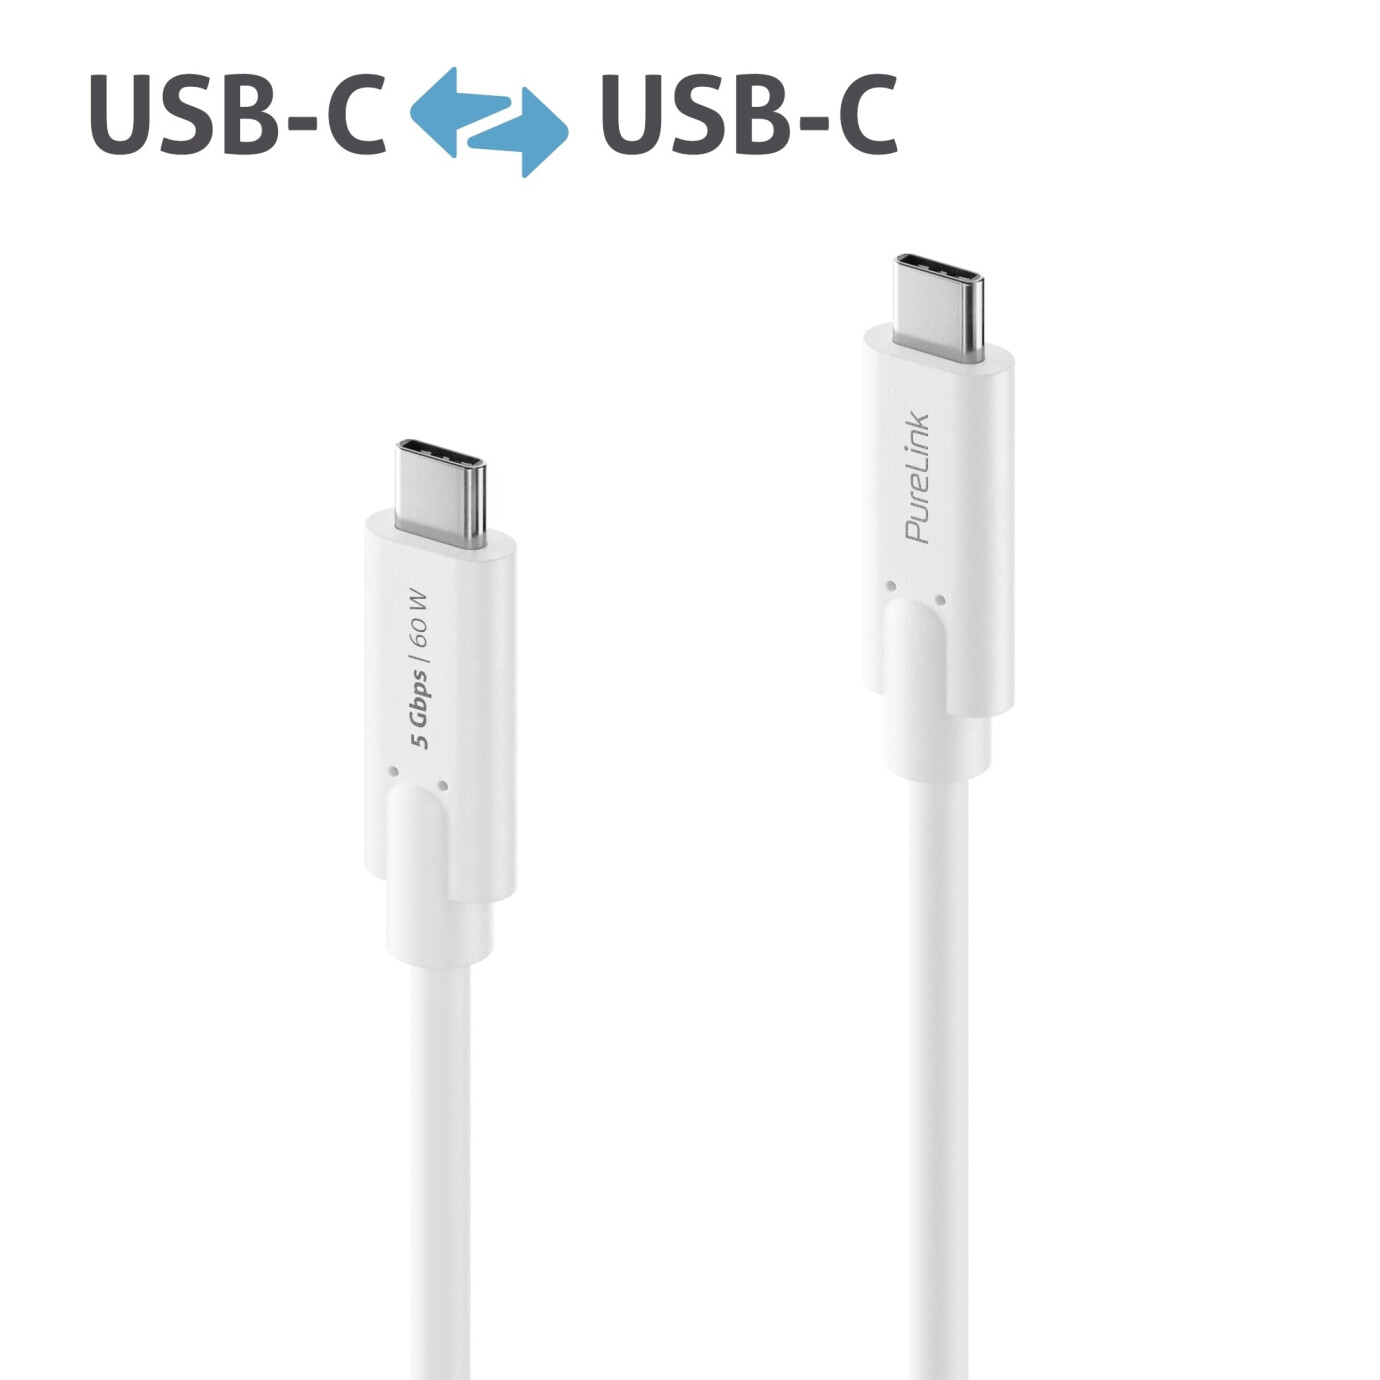 Purelink IS2500-020 USB-C auf USB-C Kabel 2m weiß